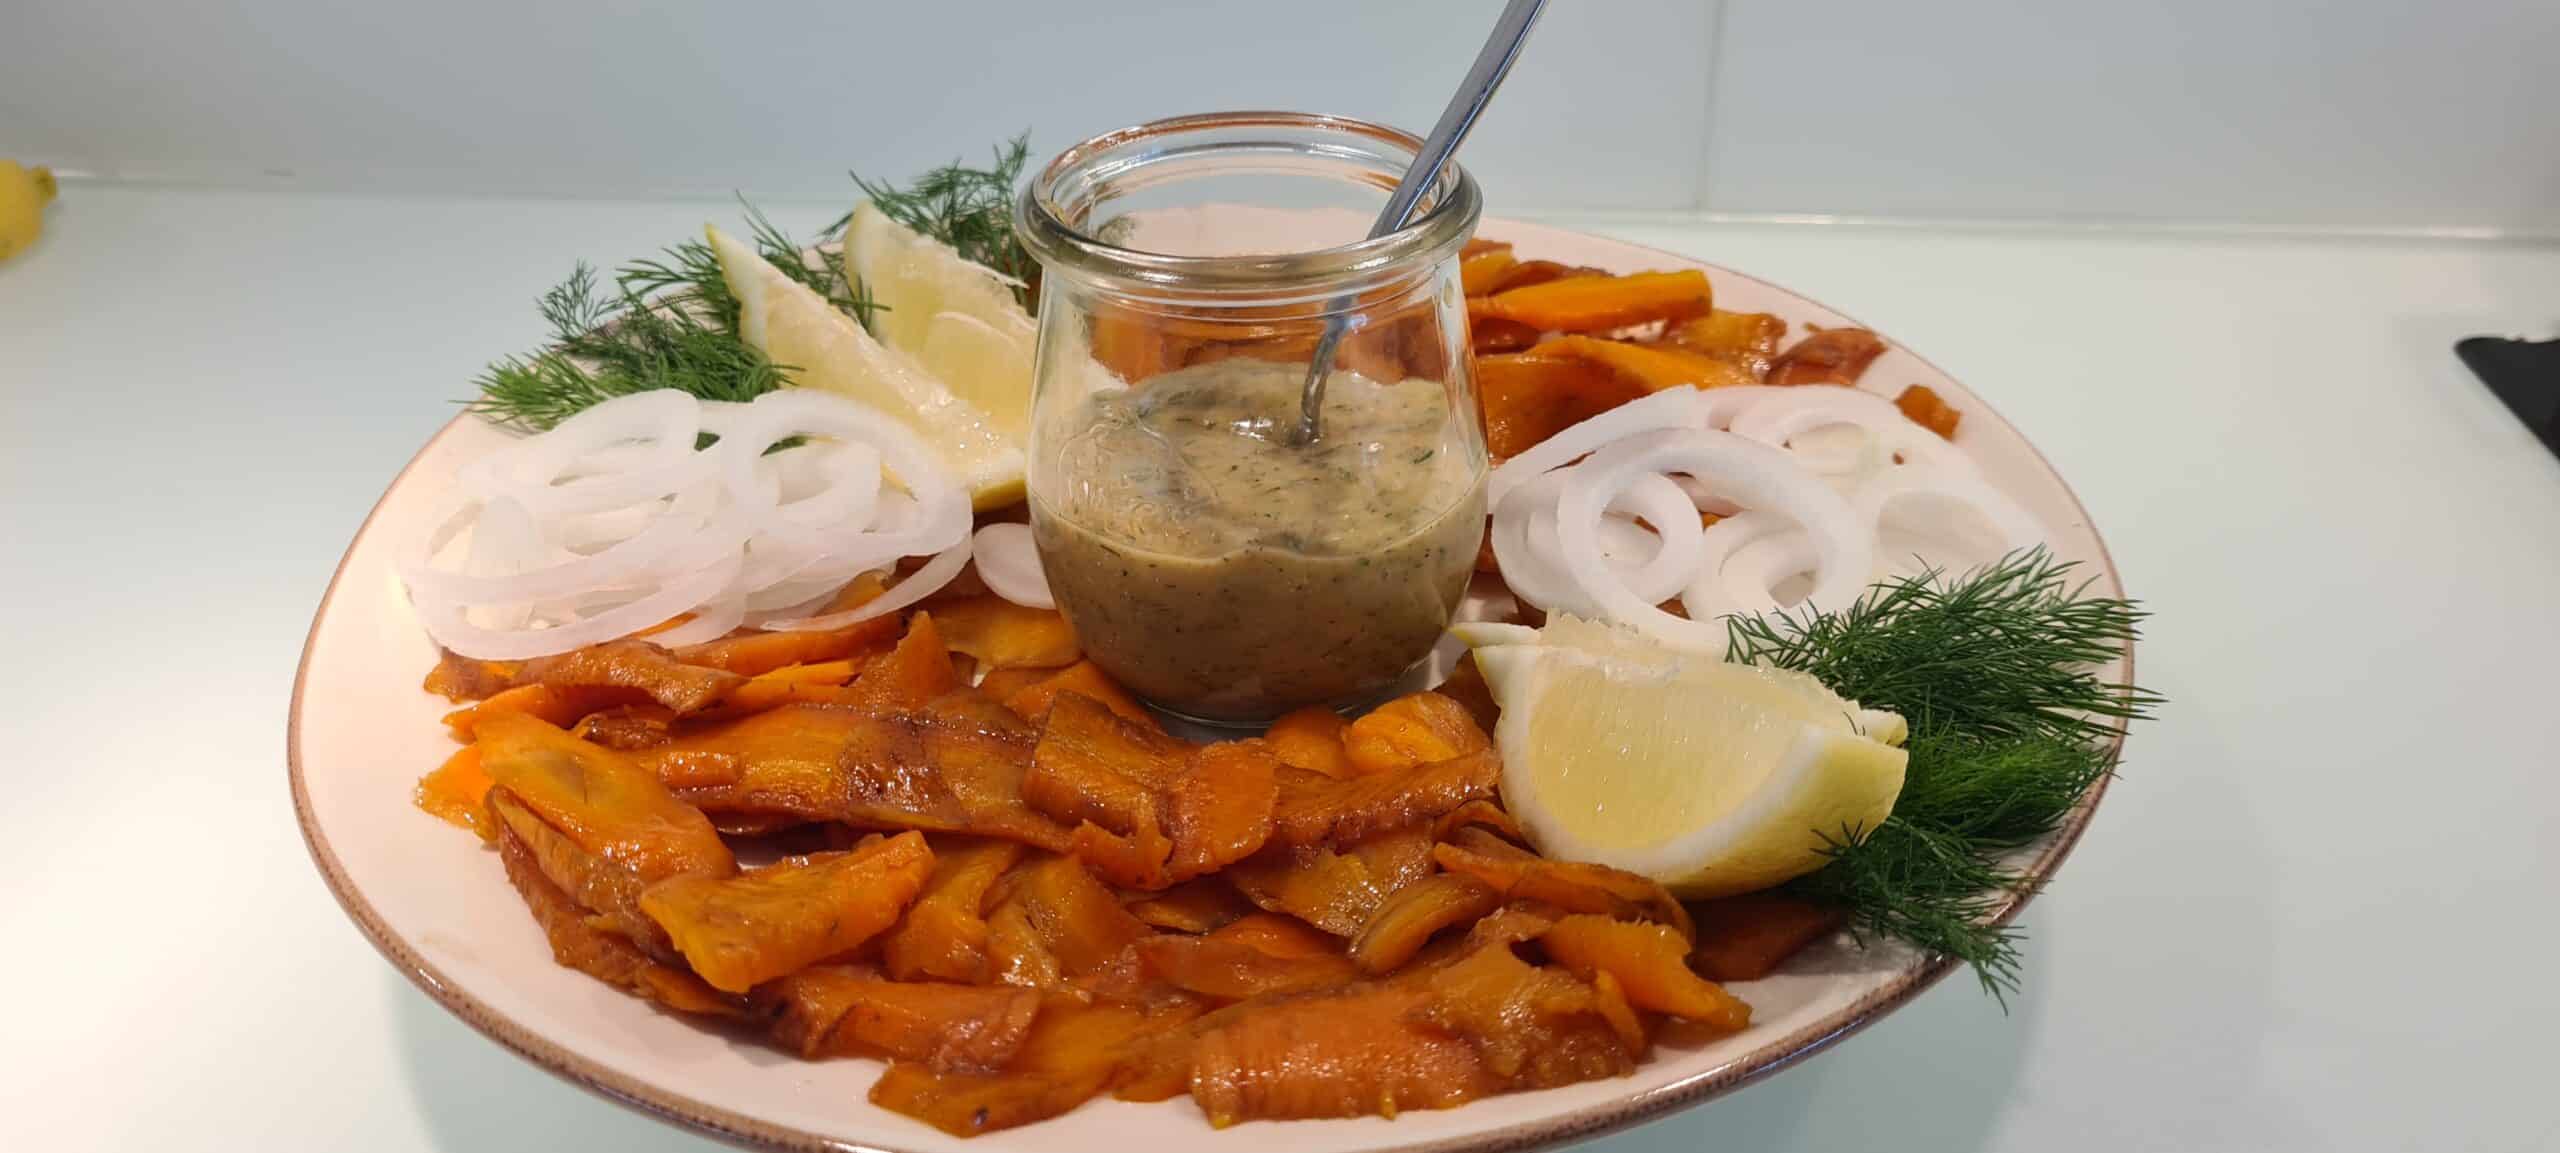 Karotten-Rauchlachs, vegan